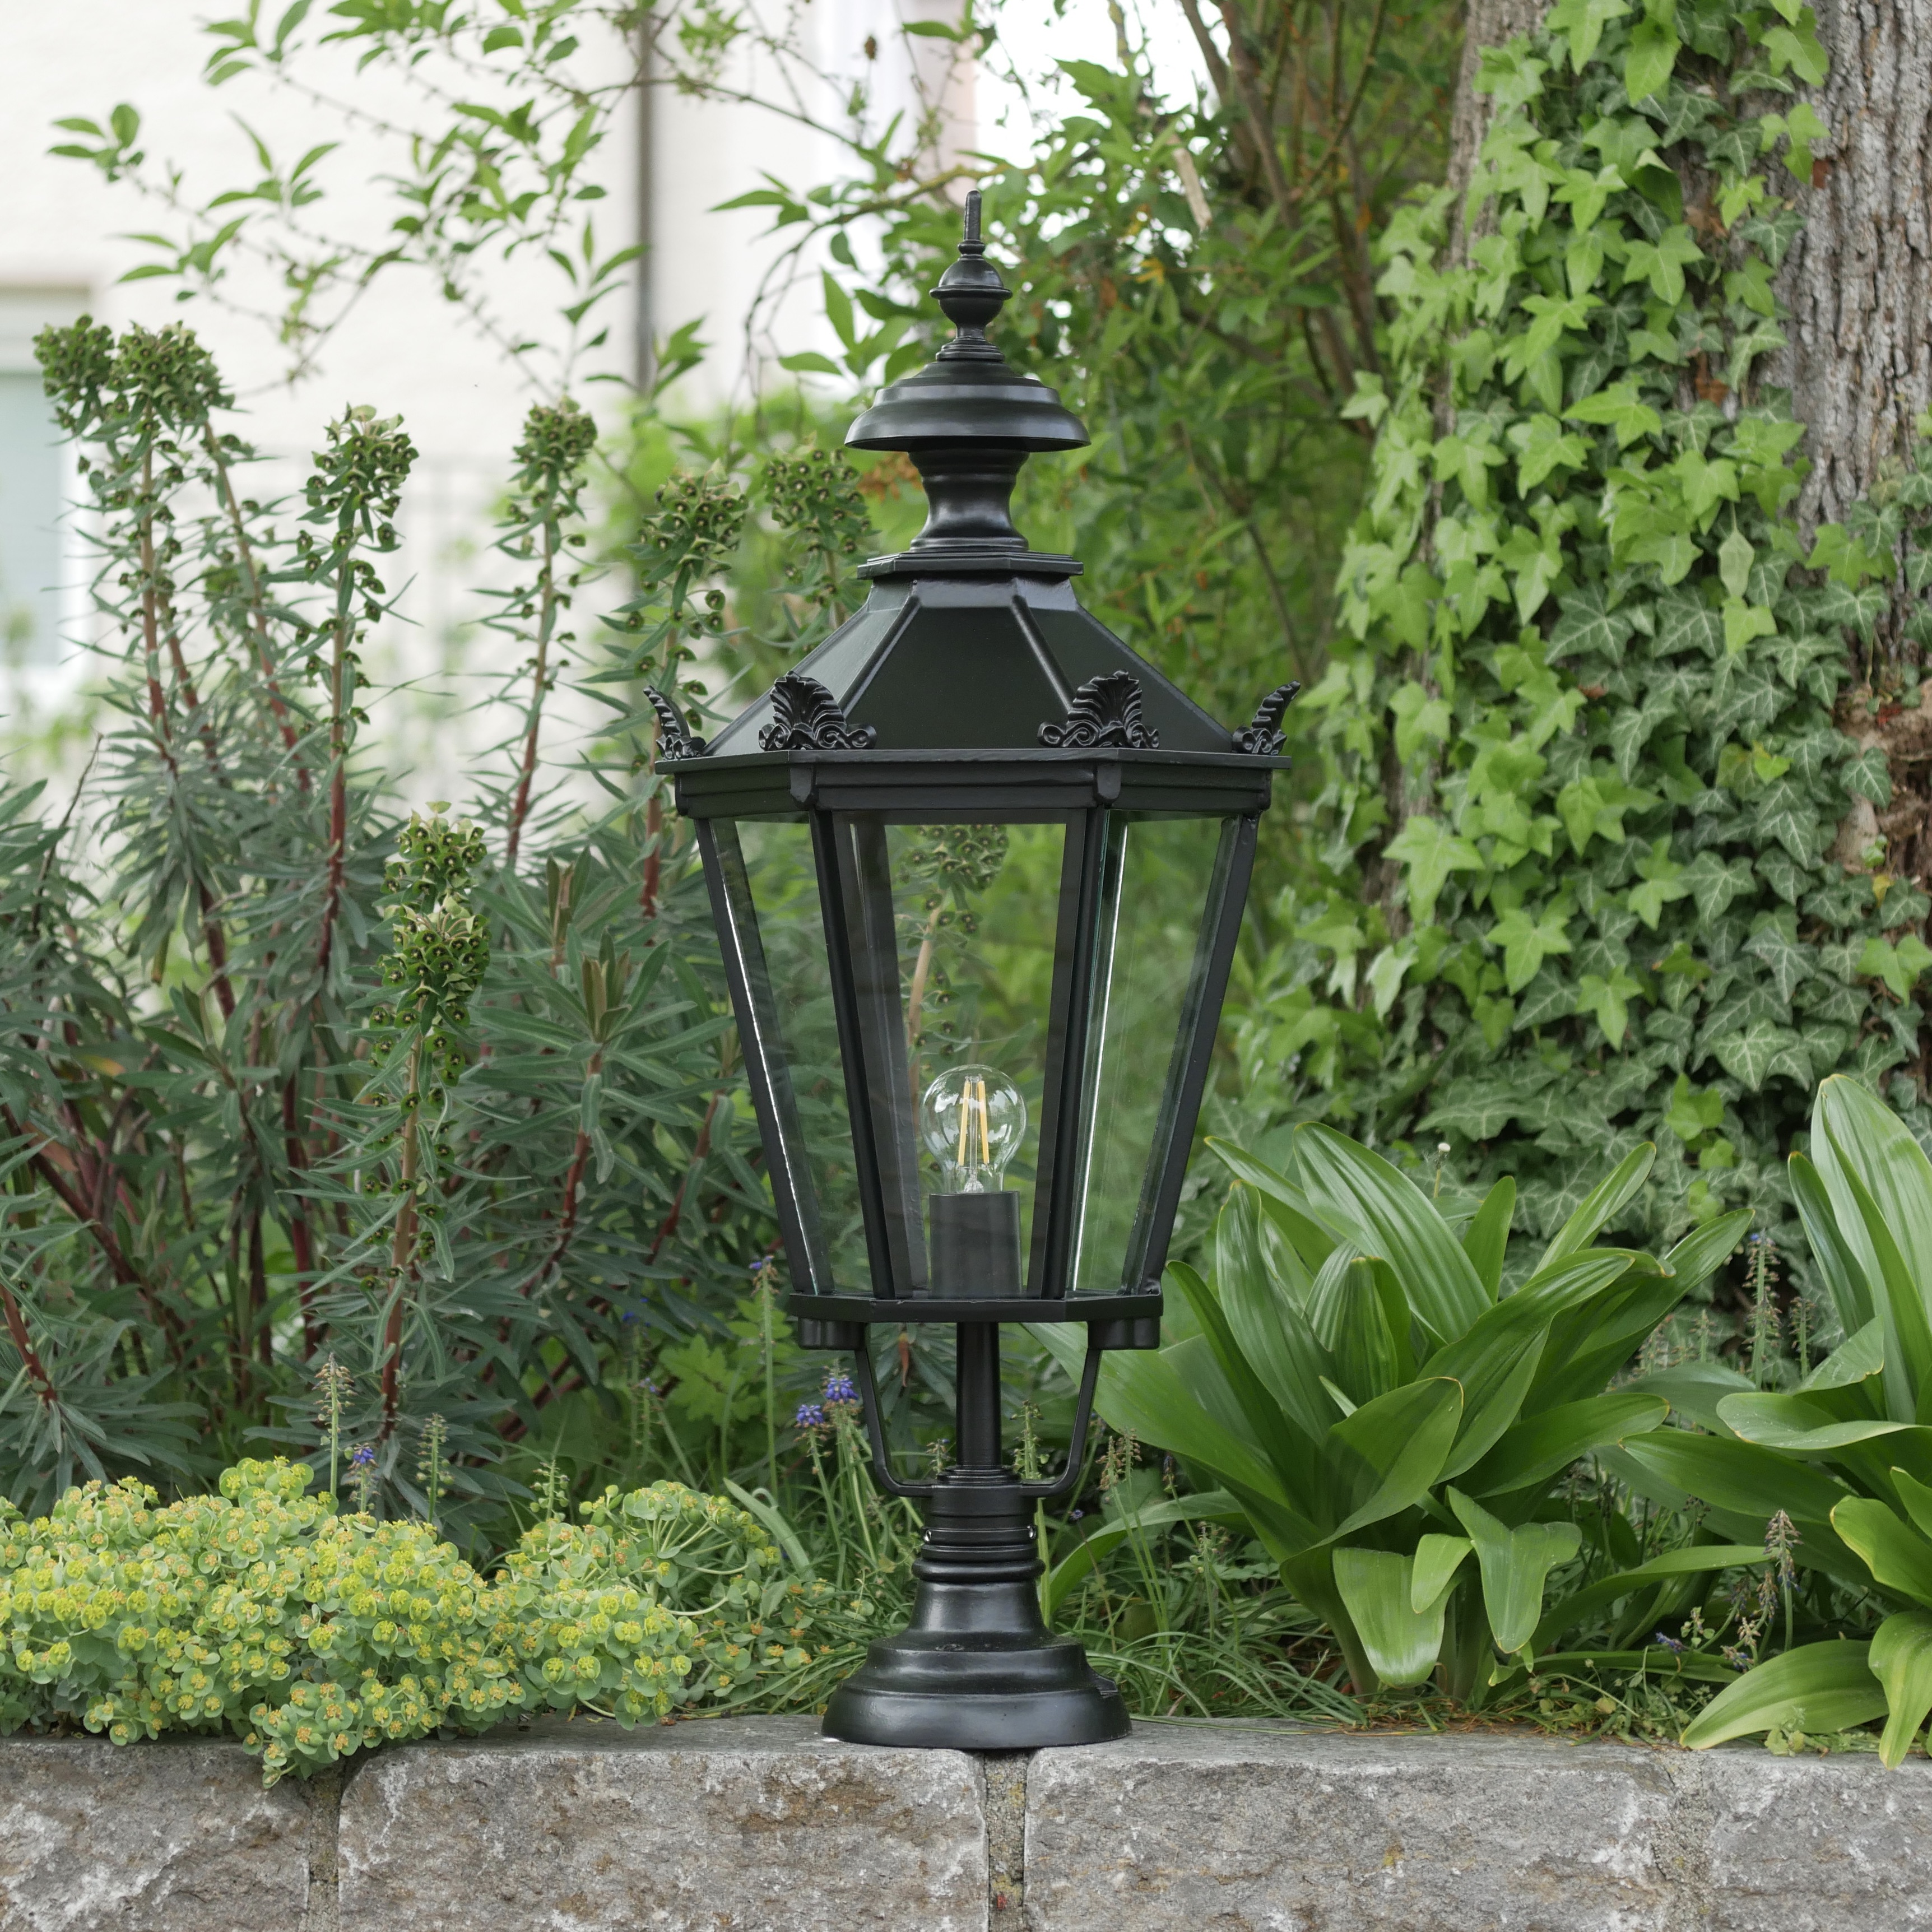 Large Garden Light Elba 71.72.73: Große Gartenleuchte Elba mit Schinkel-Laterne 72, mittleres Modell, Schwarz RAL 9005, klares Glas